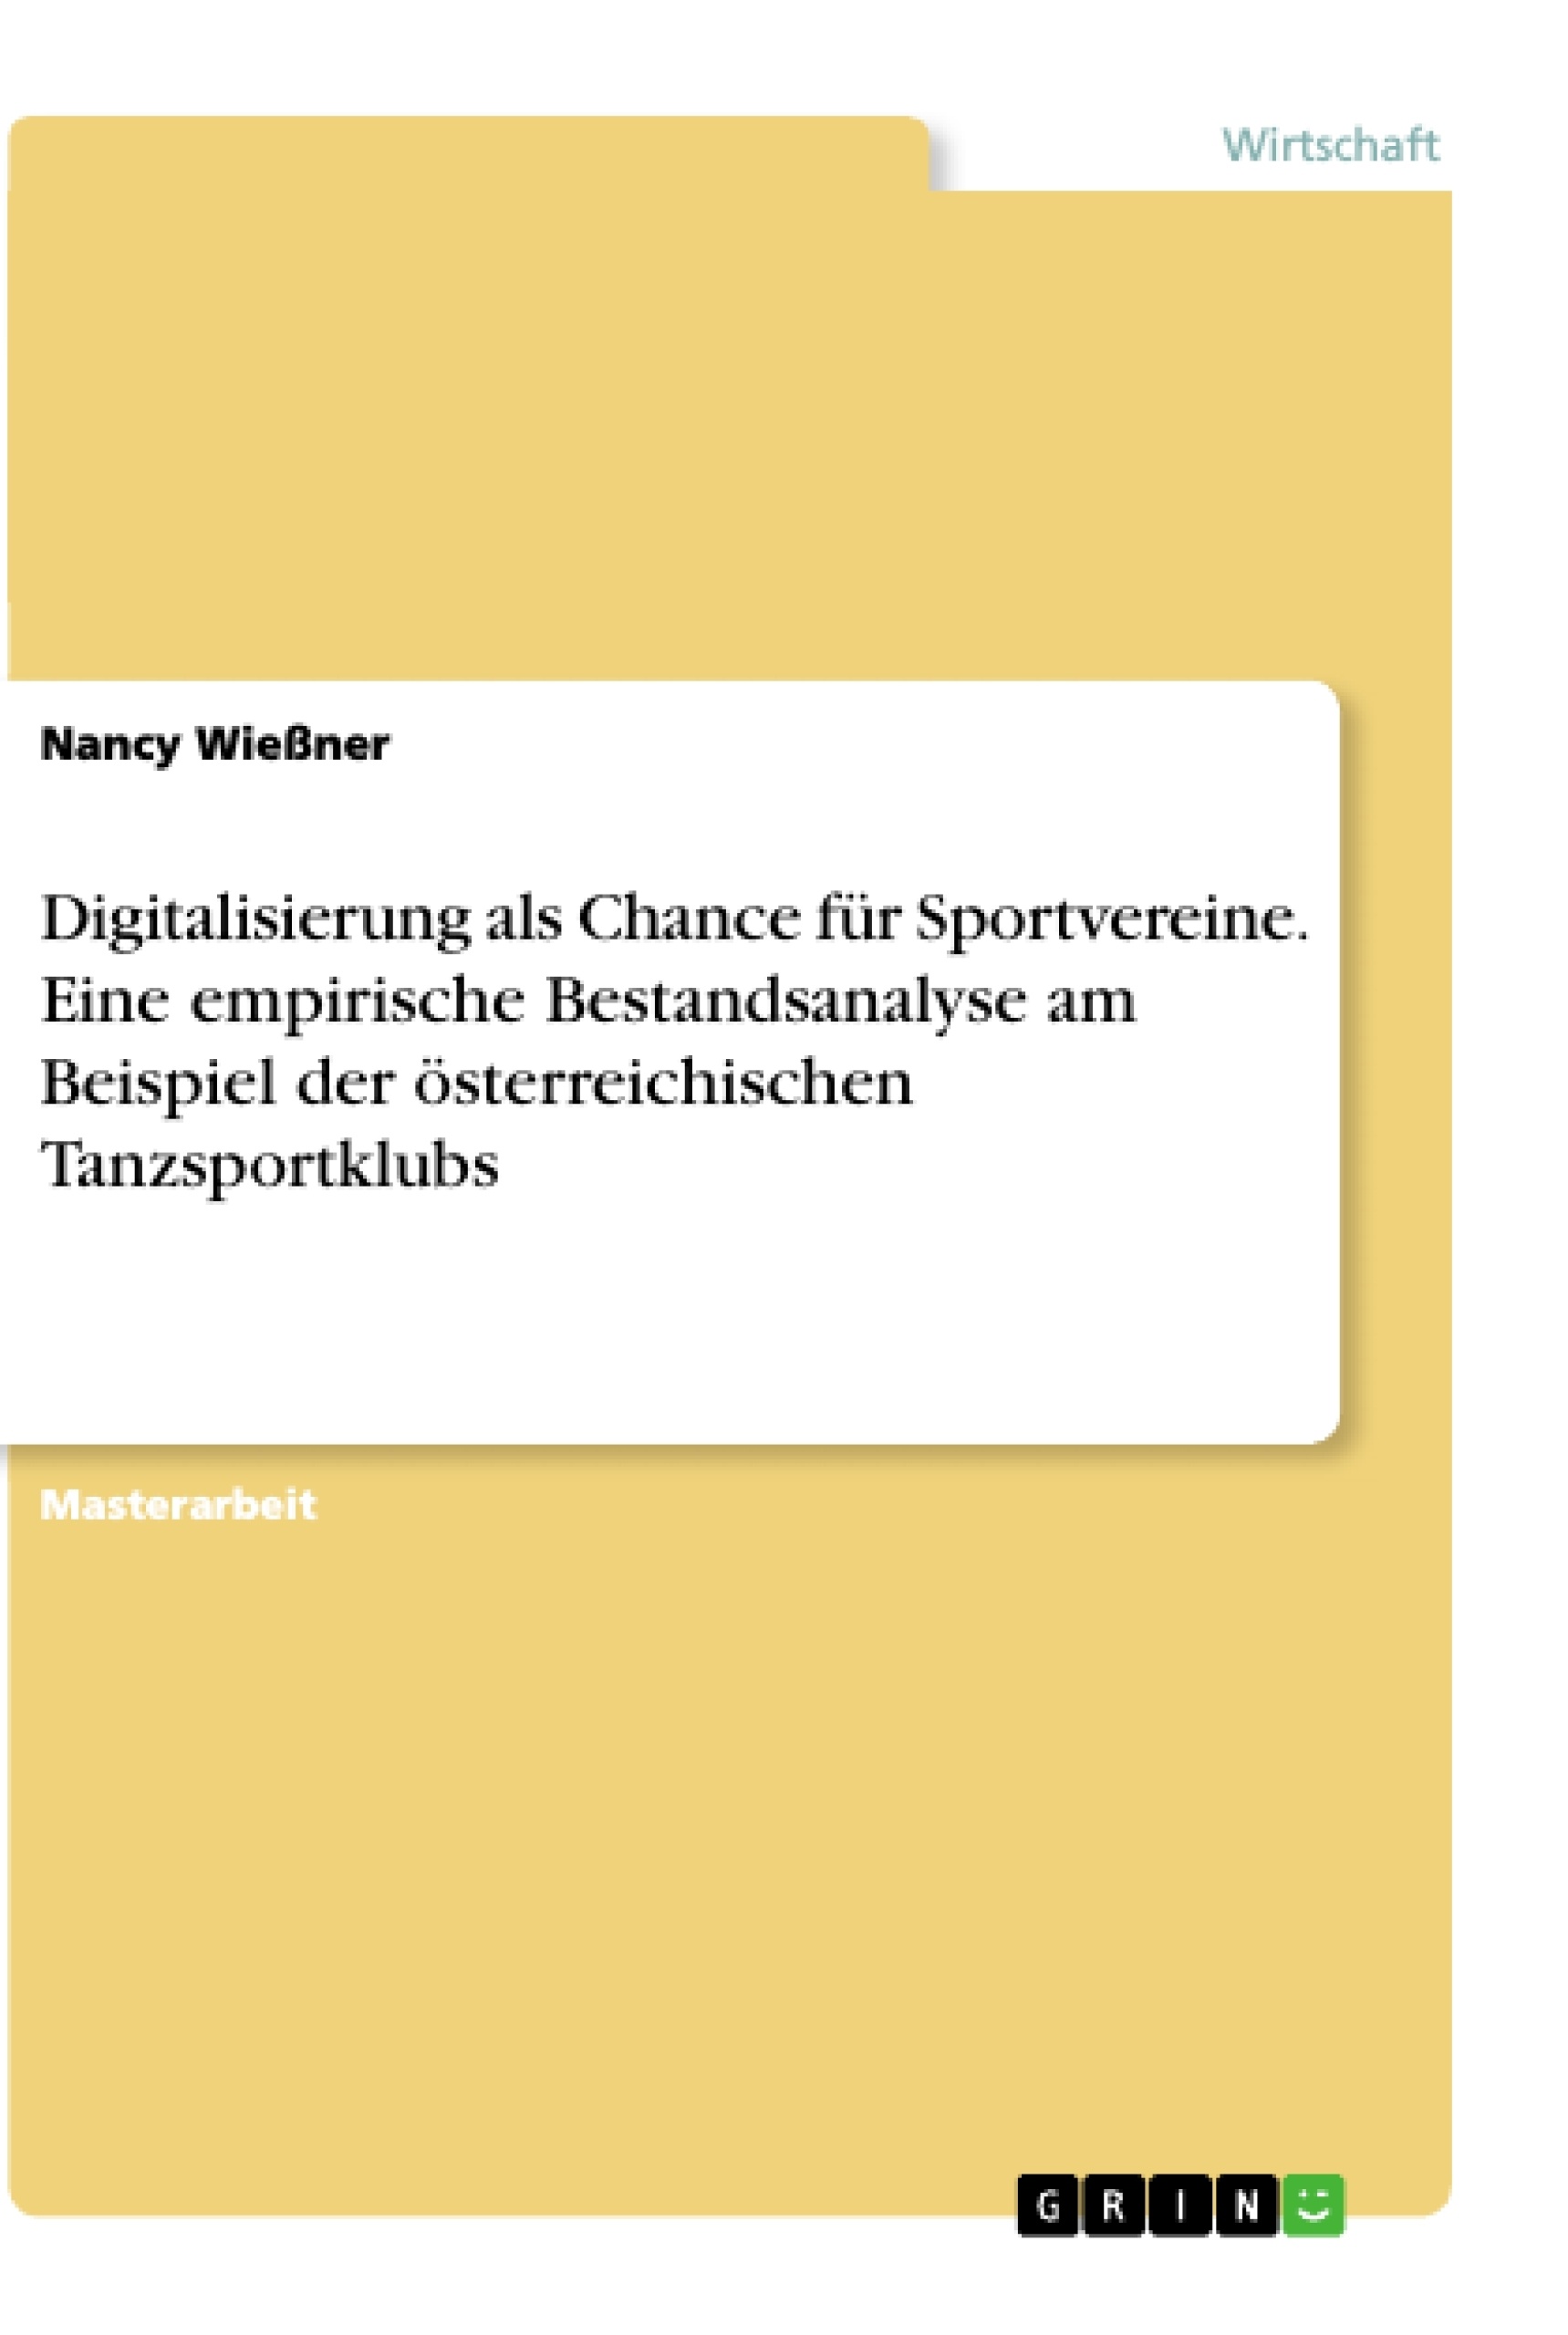 Title: Digitalisierung als Chance für Sportvereine. Eine empirische Bestandsanalyse am Beispiel der österreichischen Tanzsportklubs